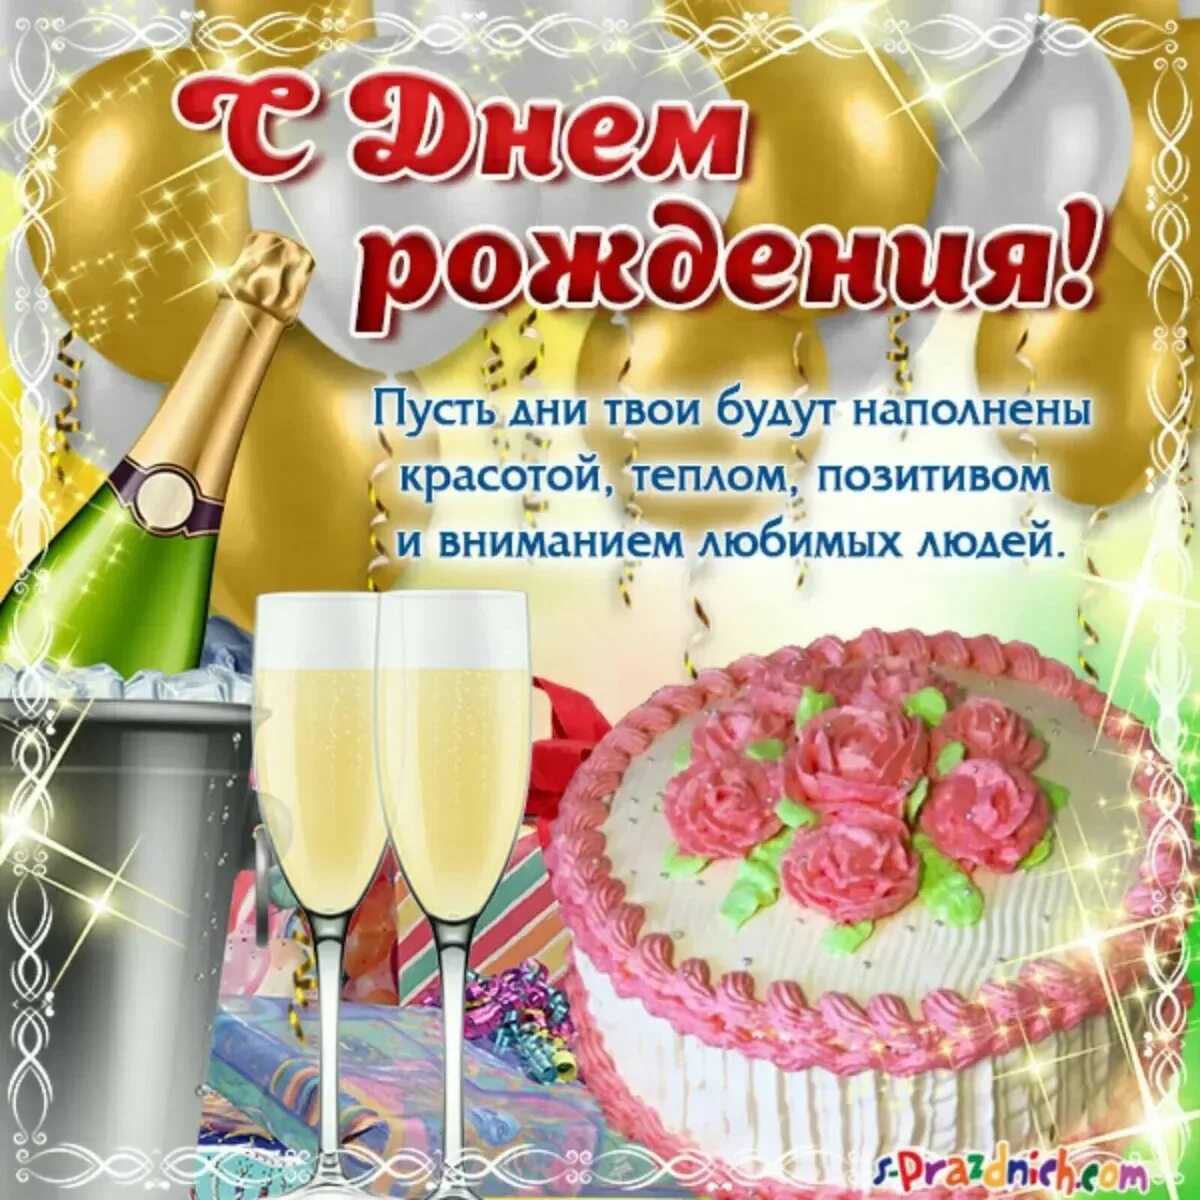 С днем рождения. Поздравления с днём рождения. Света с днём рождения поздравления. Поздравления с днём рождения с тортом и шампанским. Поздравления с днем рождения 2 женщинам